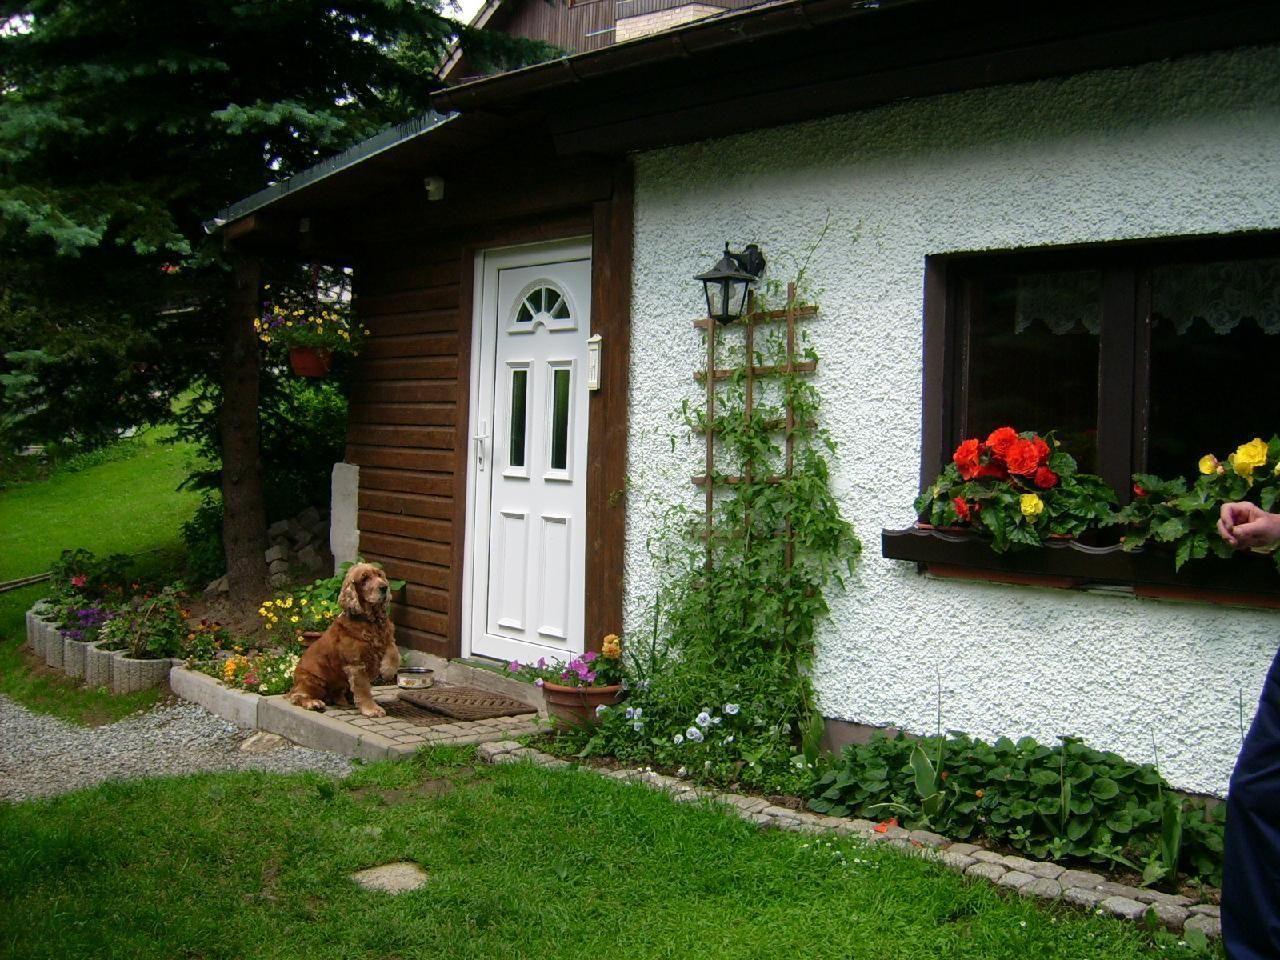 Ferienhaus in Kurort Oberwiesenthal mit Grill   Oberwiesenthal